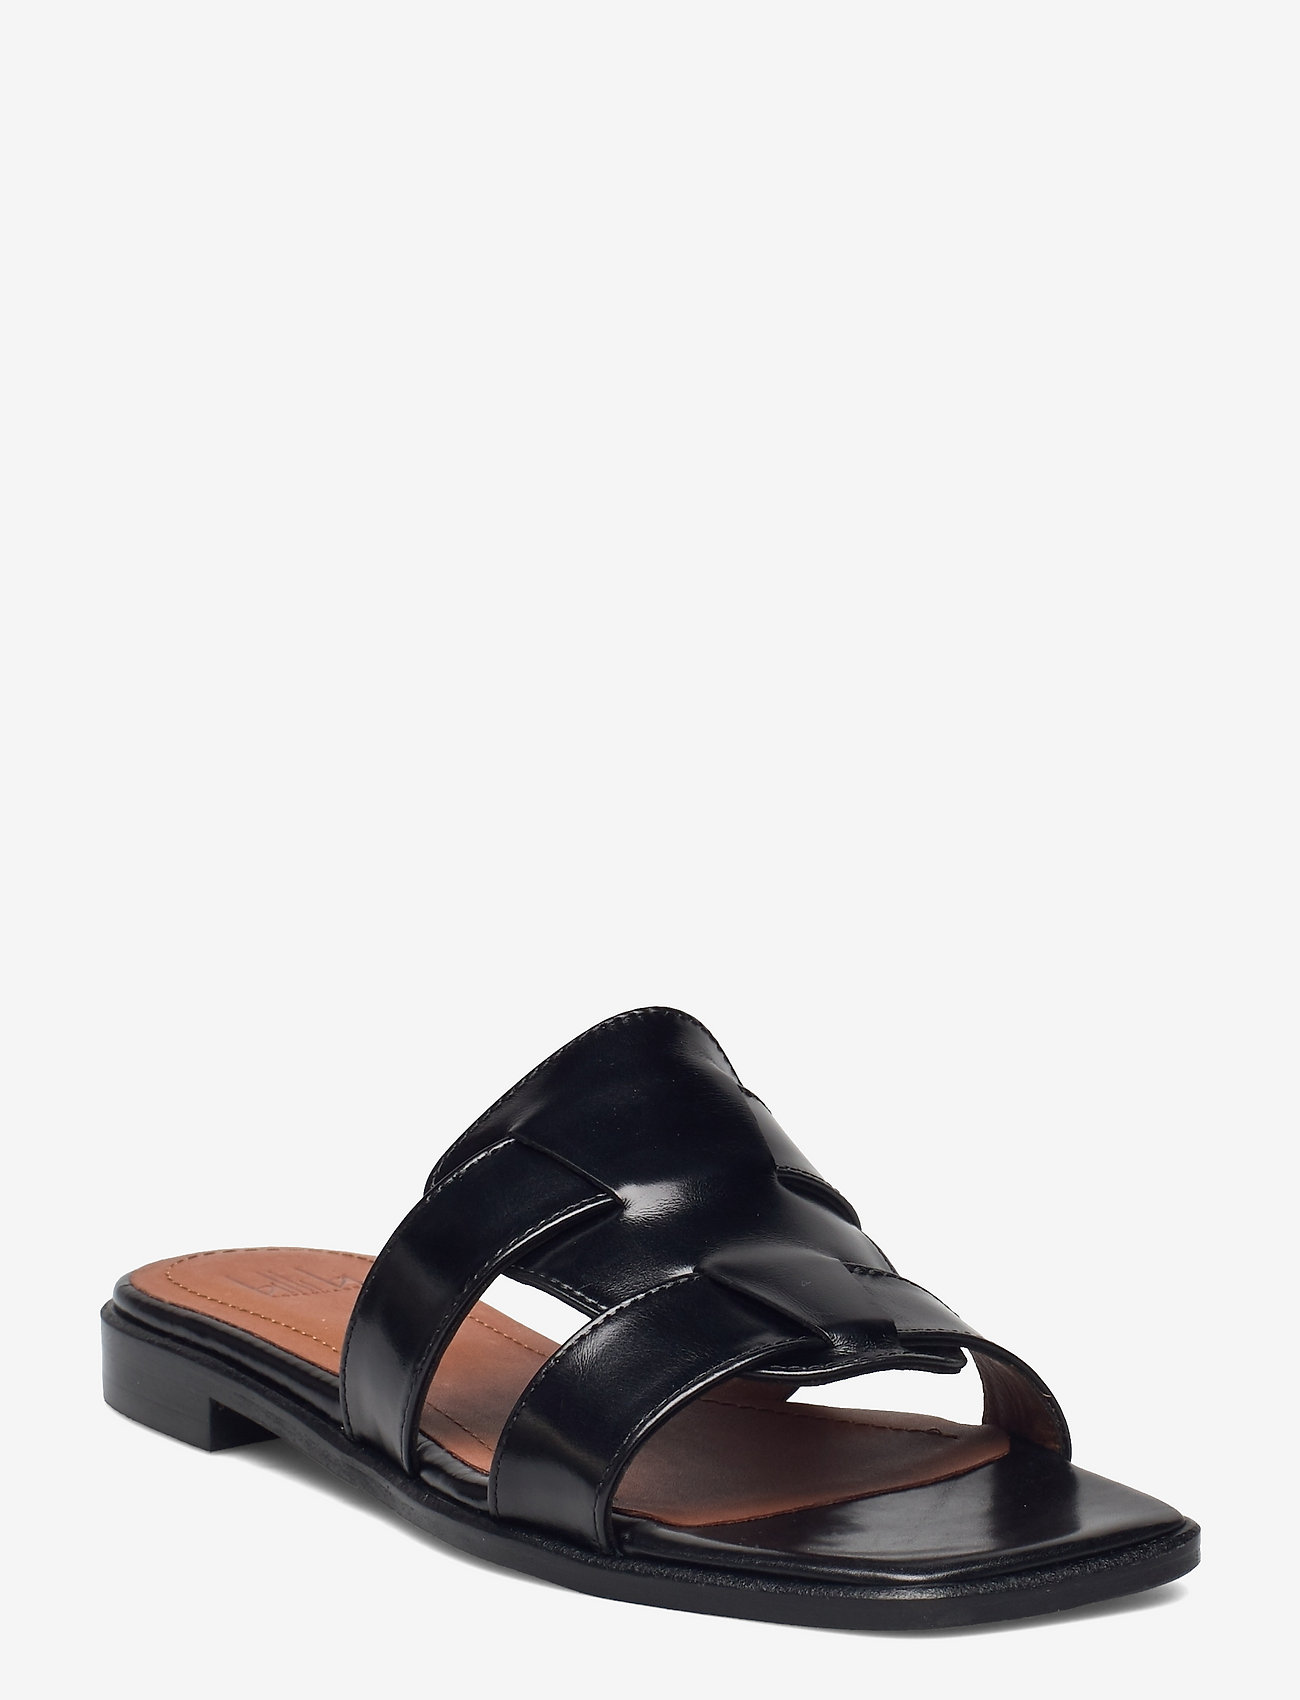 Billi Bi - Sandals - flat sandals - black giamaica calf 80 - 0